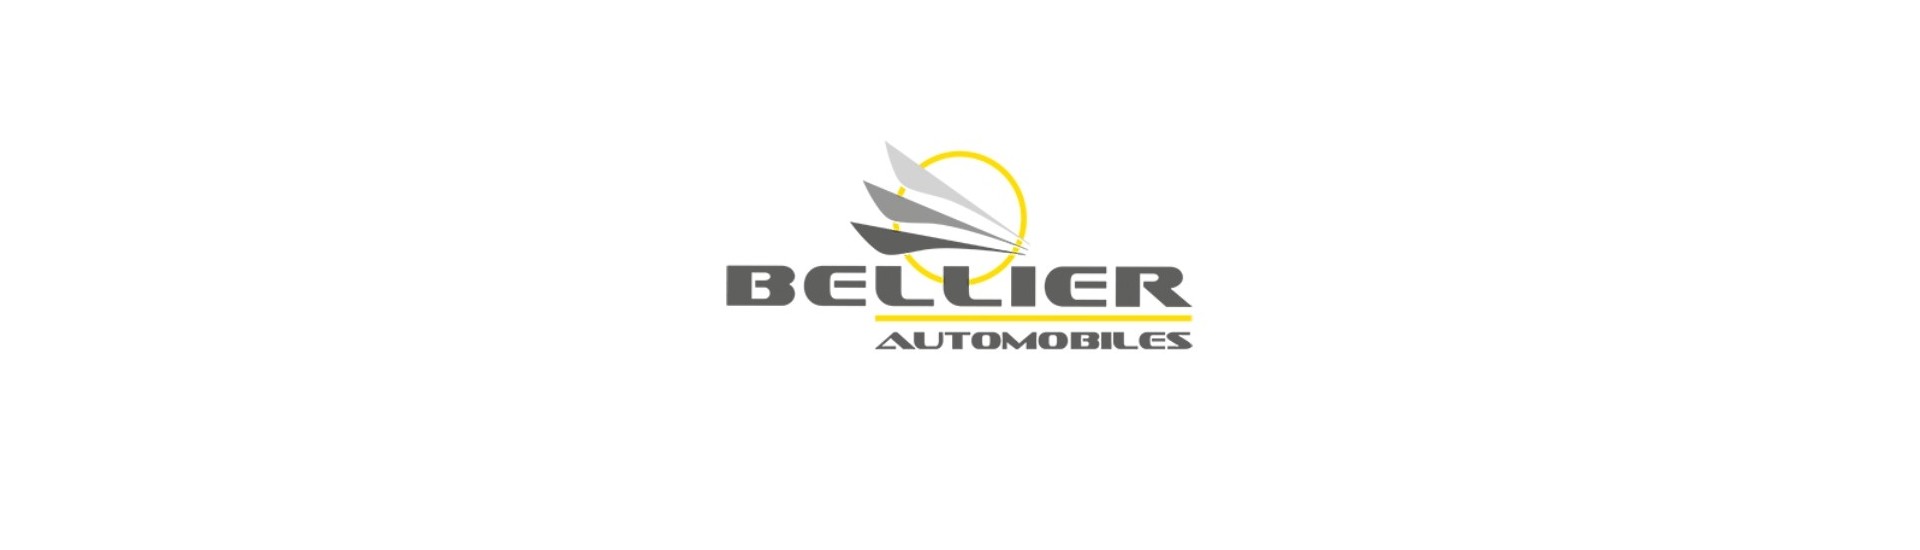 Cable acelerador al mejor precio para coche sin permiso Bellier